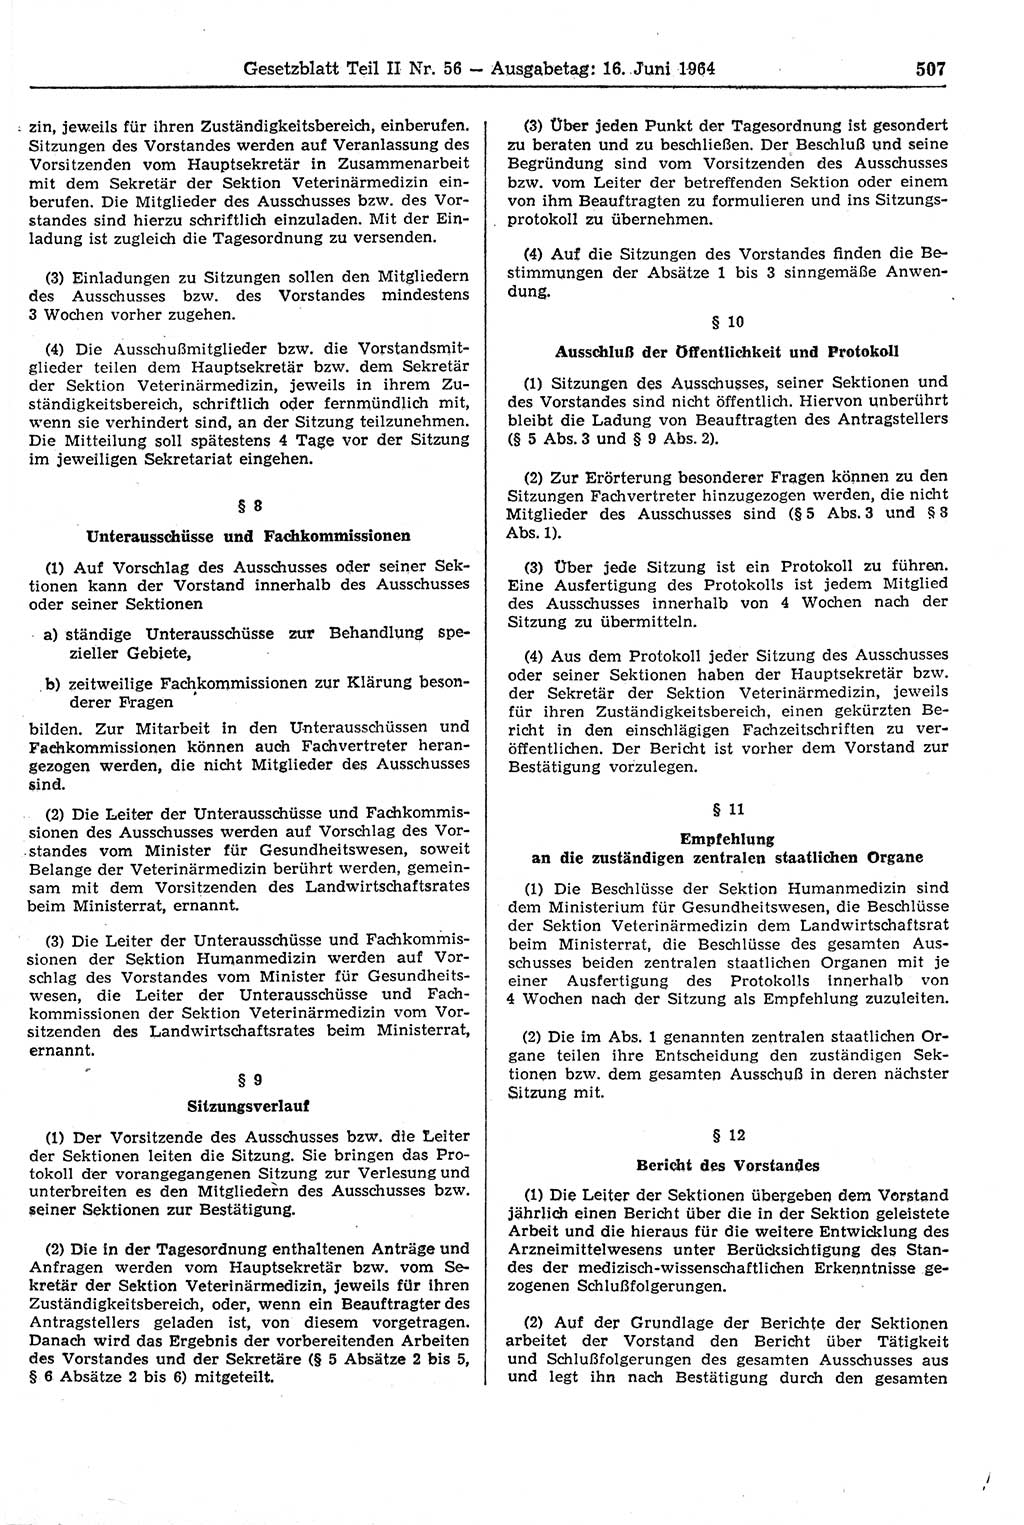 Gesetzblatt (GBl.) der Deutschen Demokratischen Republik (DDR) Teil ⅠⅠ 1964, Seite 507 (GBl. DDR ⅠⅠ 1964, S. 507)